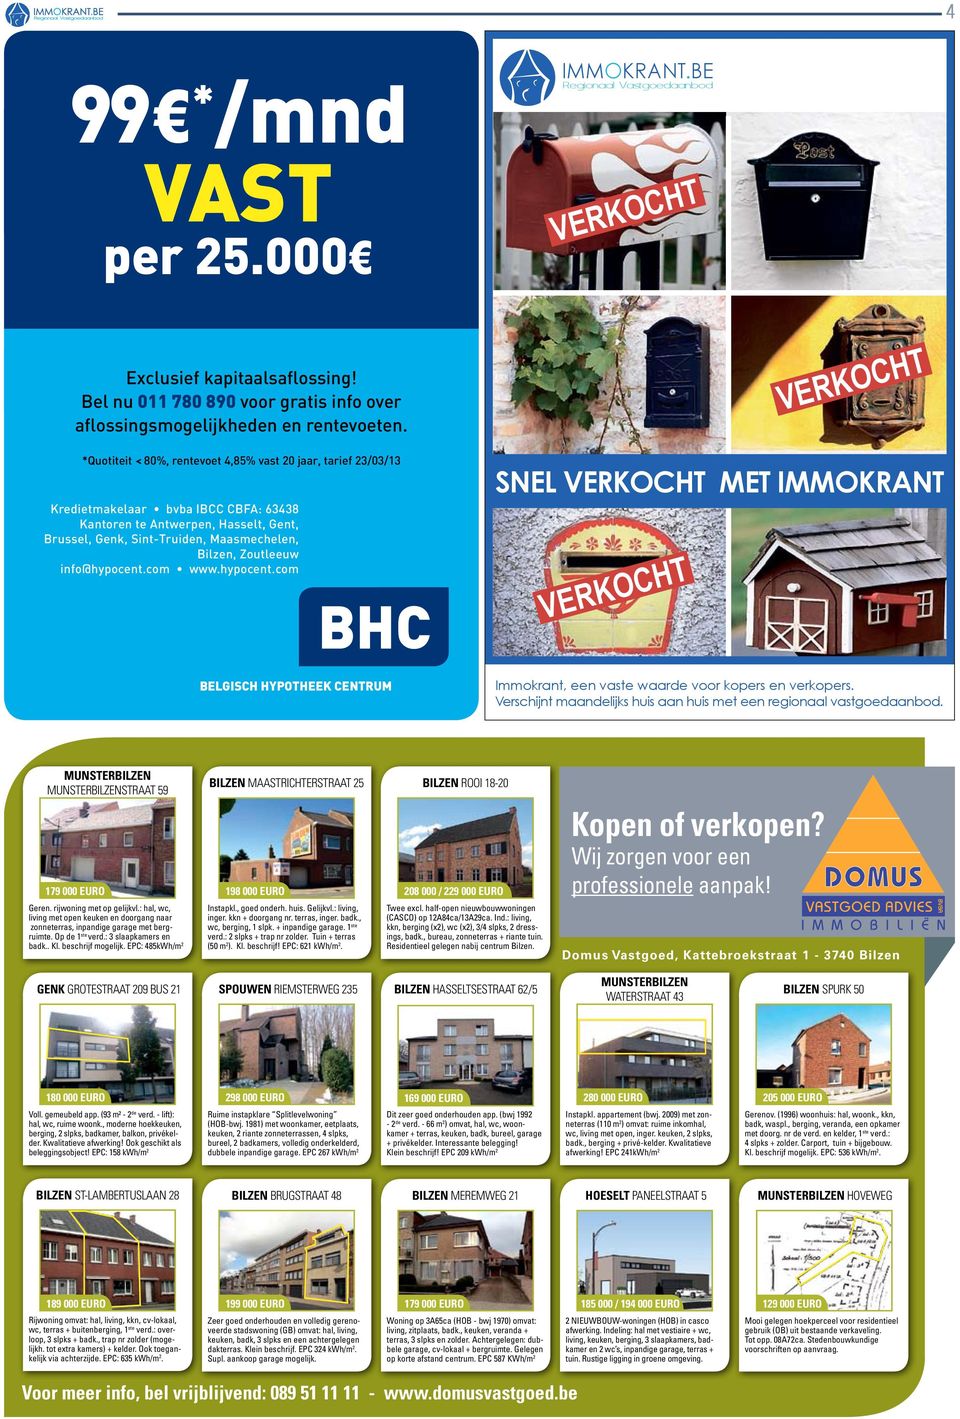 info@hypocent.com www.hypocent.com BHC snel verkocht met Immokrant Verkocht Verkocht BelgiSCH HypoTHeek CenTrum Immokrant, een vaste waarde voor kopers en verkopers.